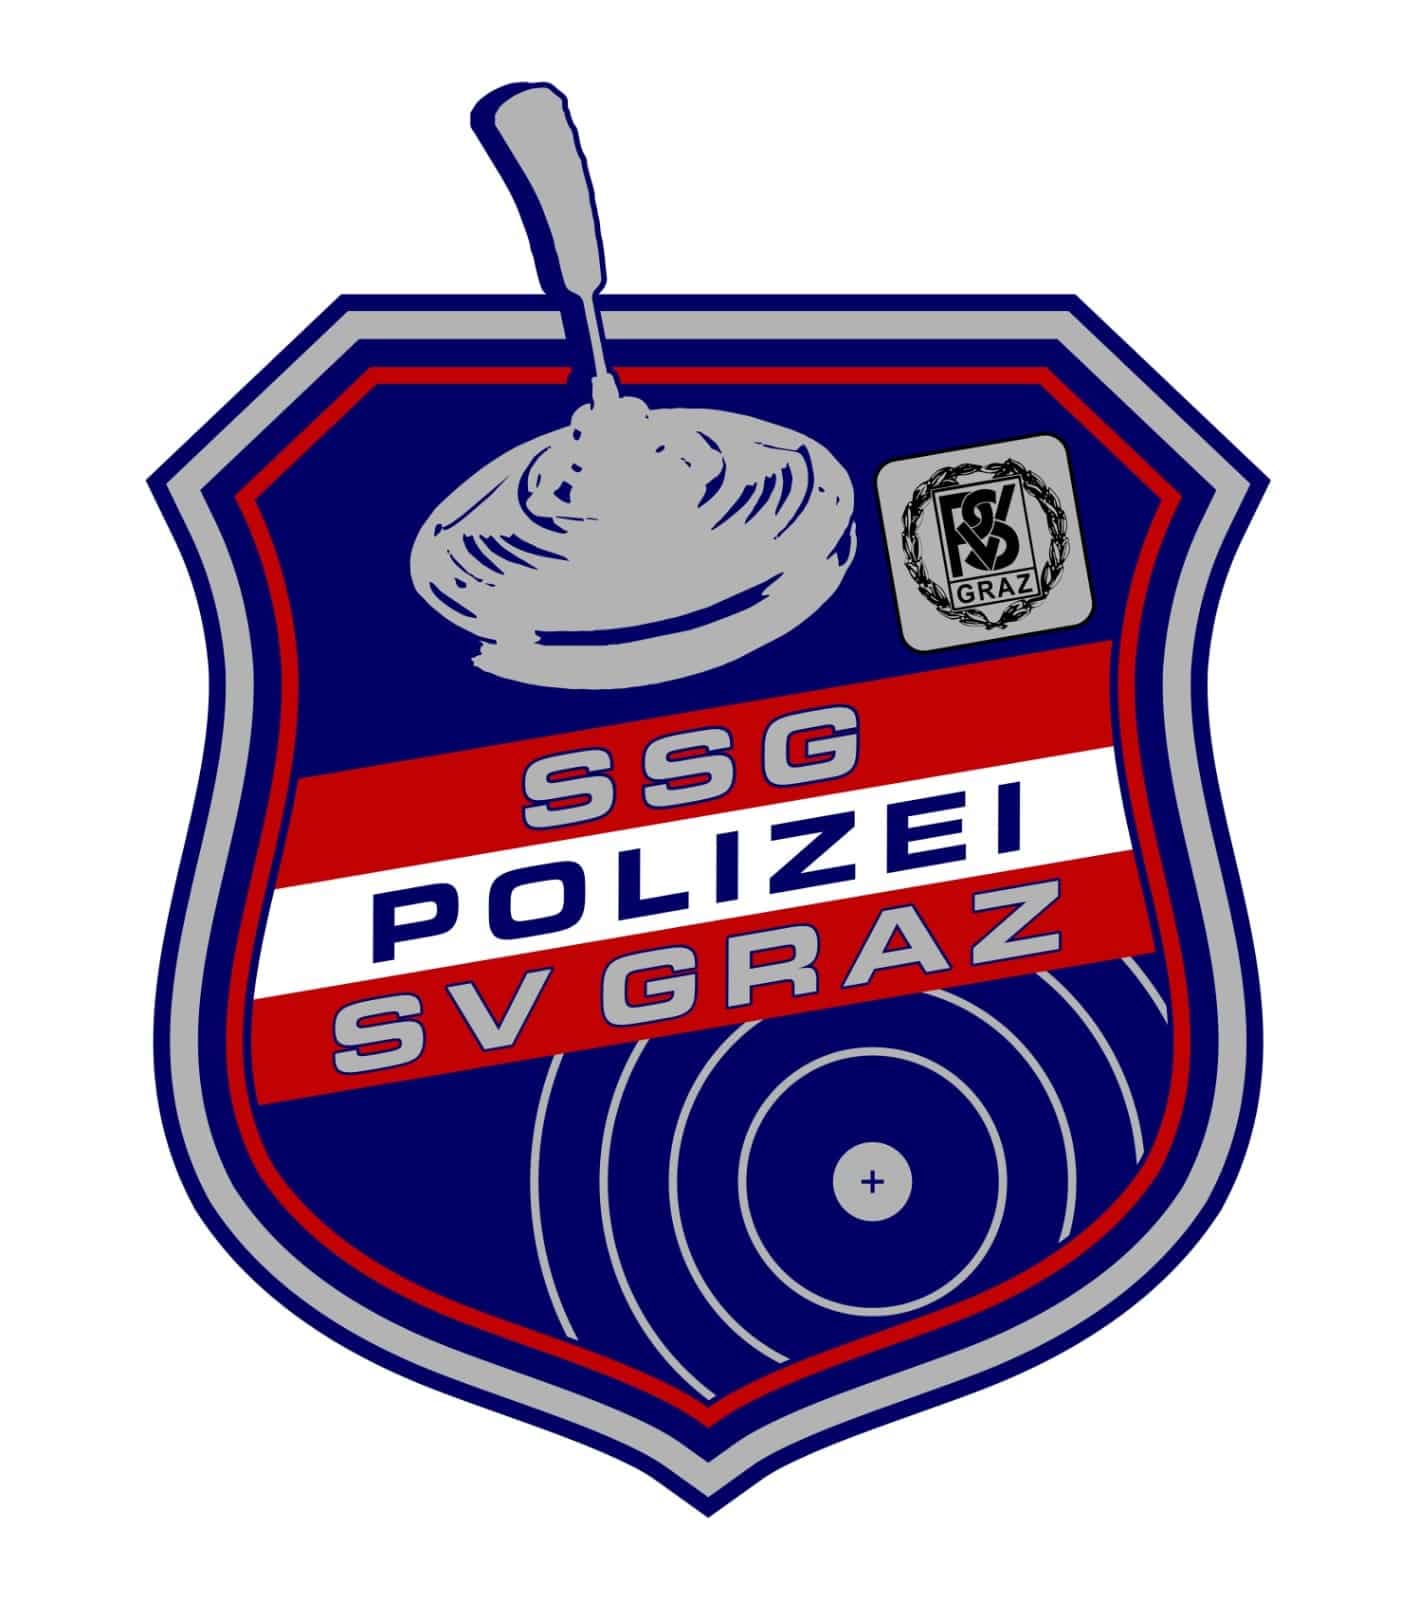 Logo SSG Polizei SV GRAZ 